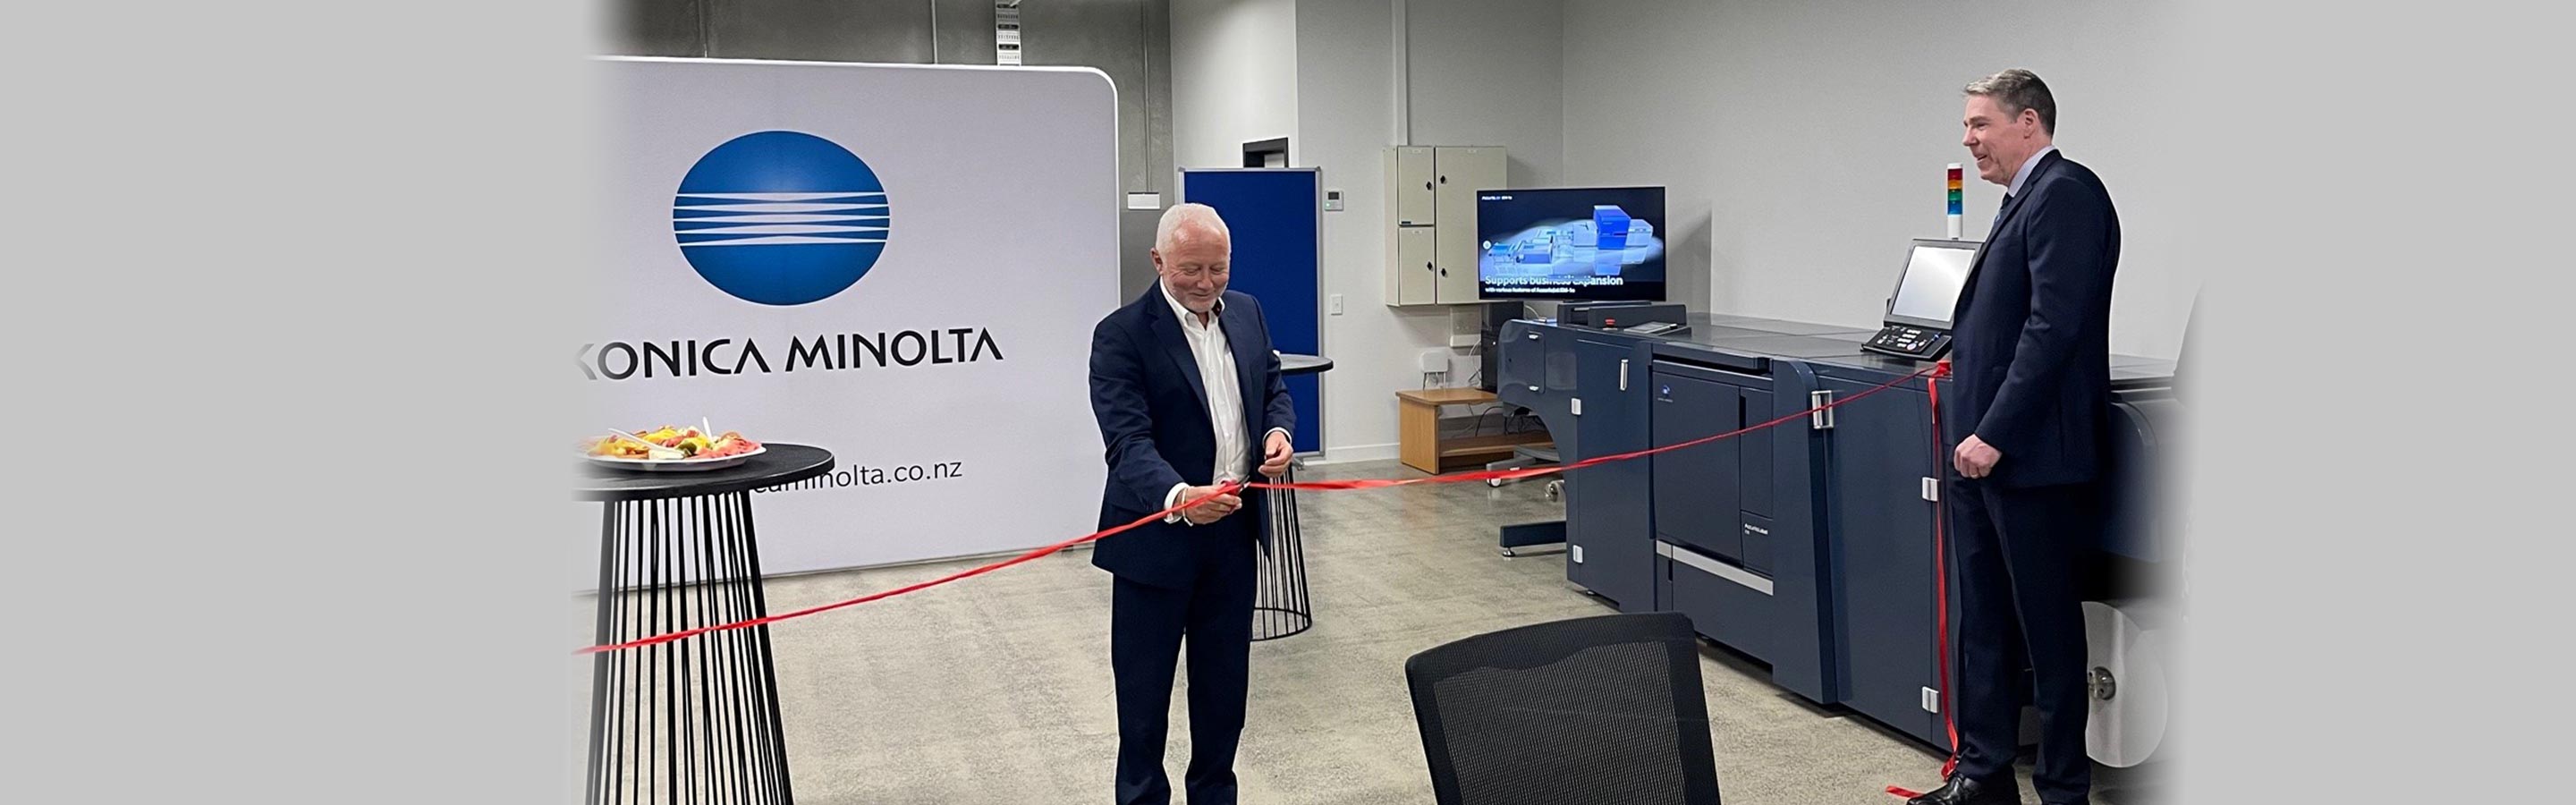 Konica Minolta New Zealand opens new showroom in Auckland